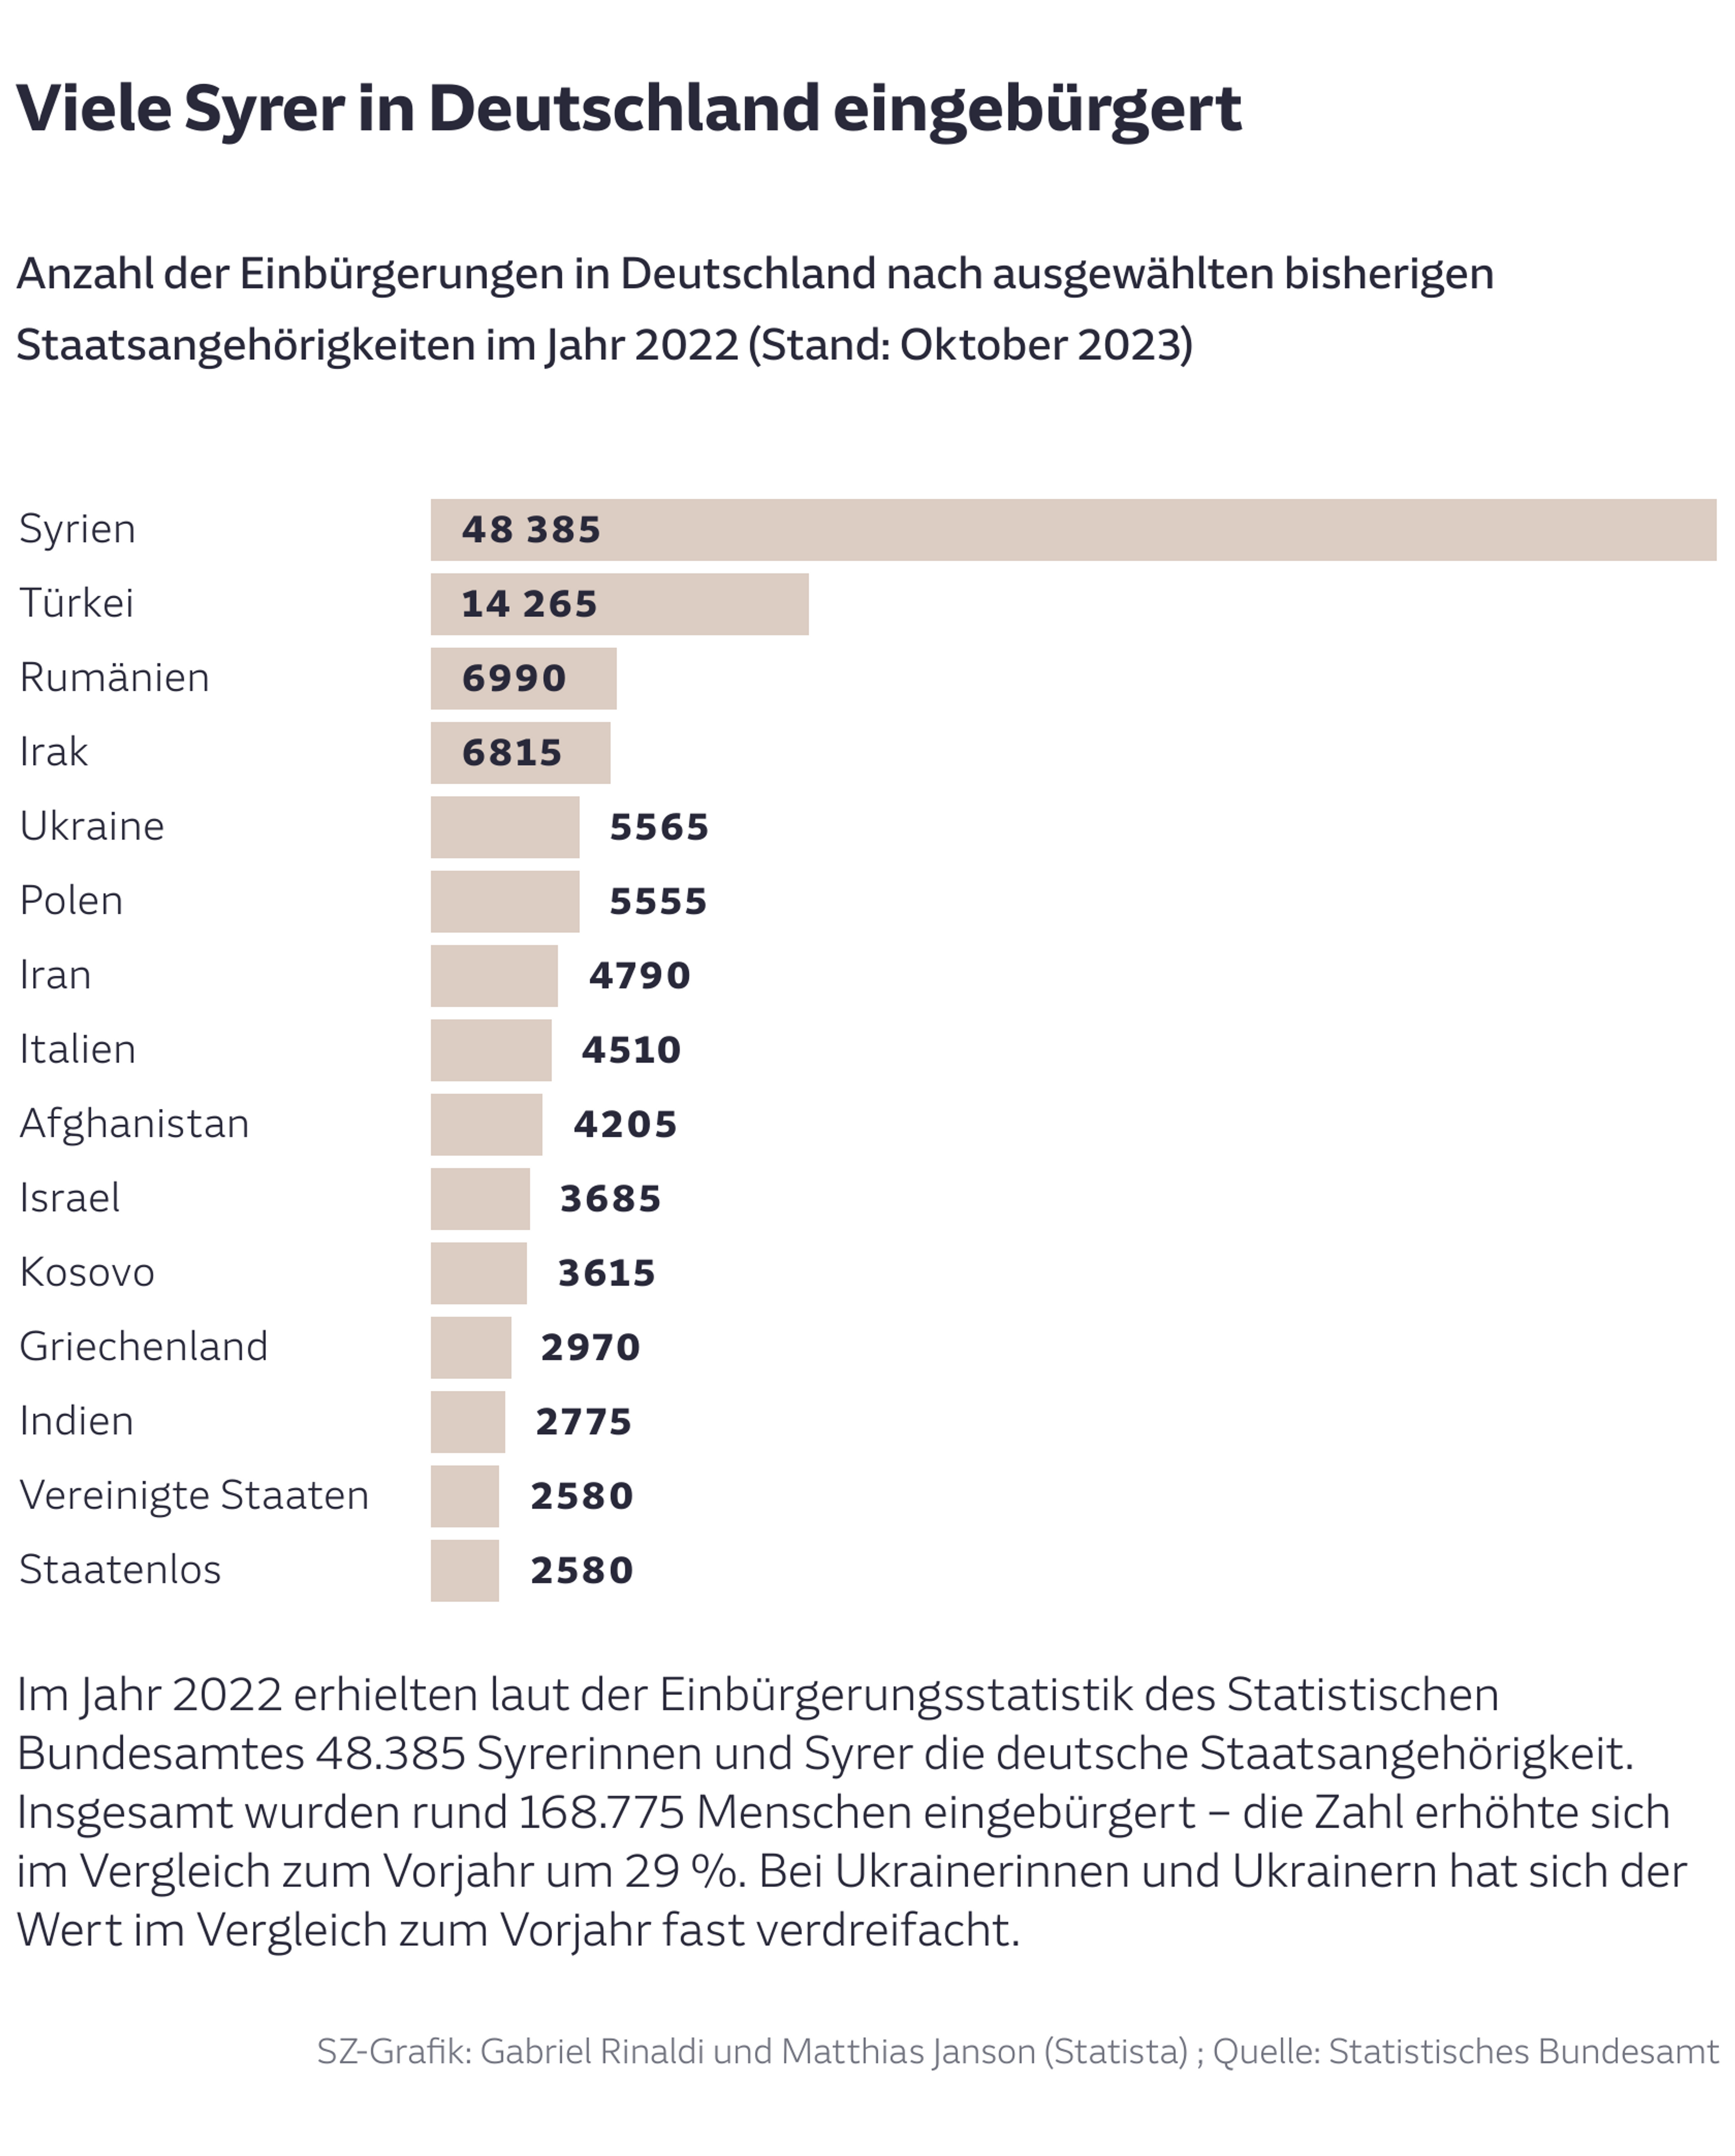 Viele Syrer in Deutschland eingebürgert